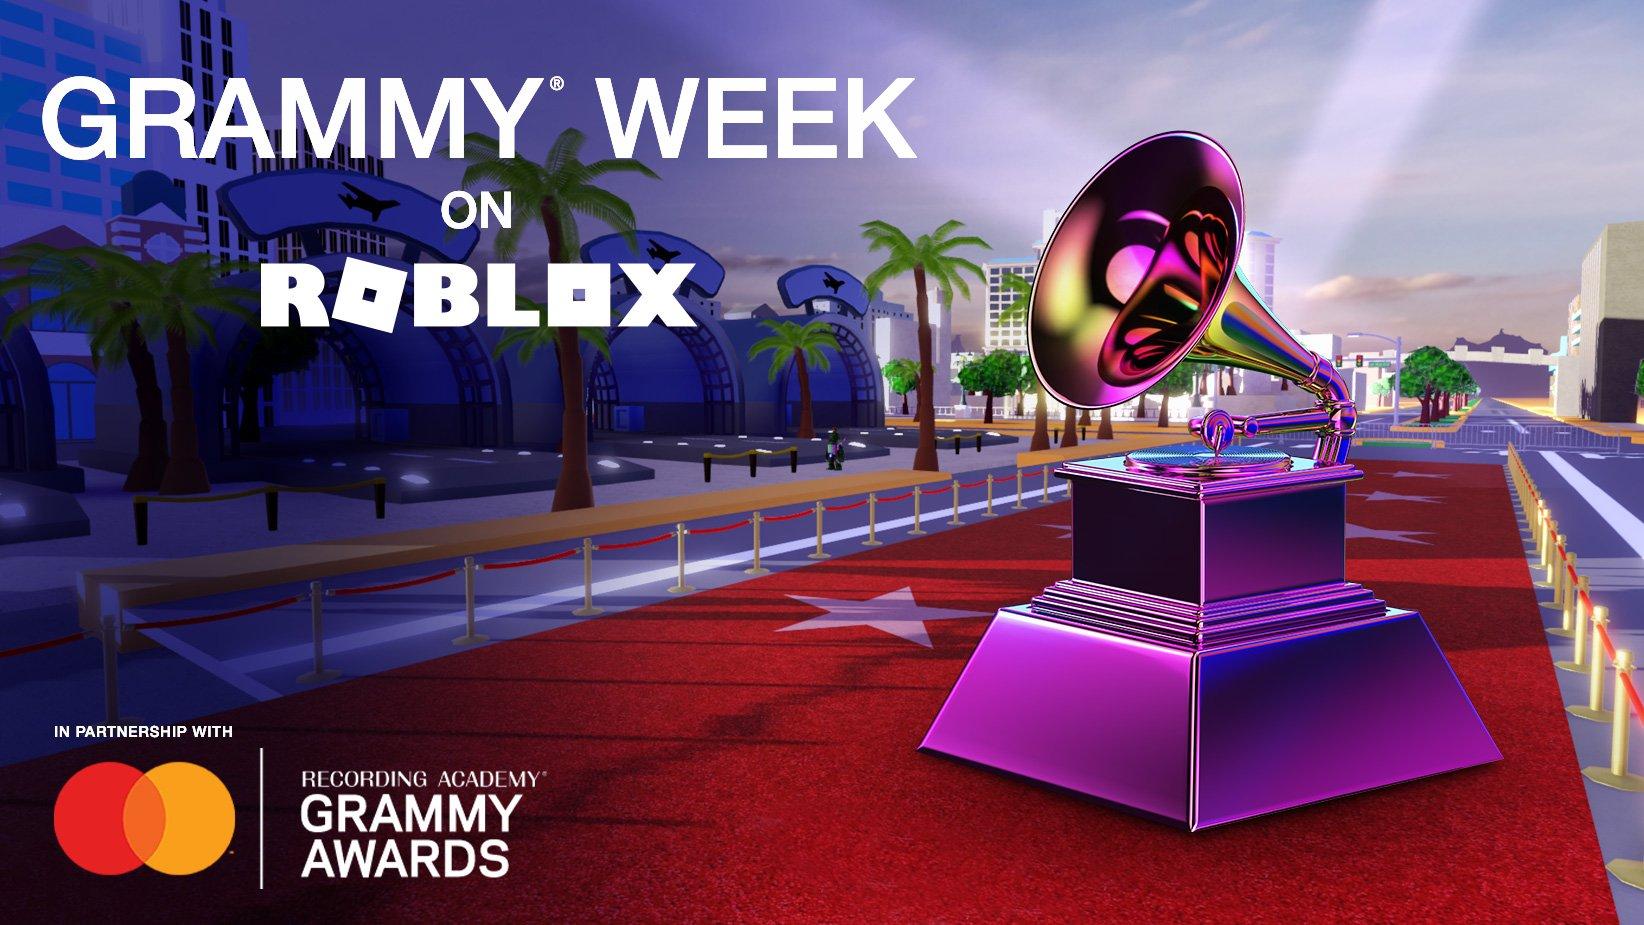 GRAMMY Week On Roblox graphic